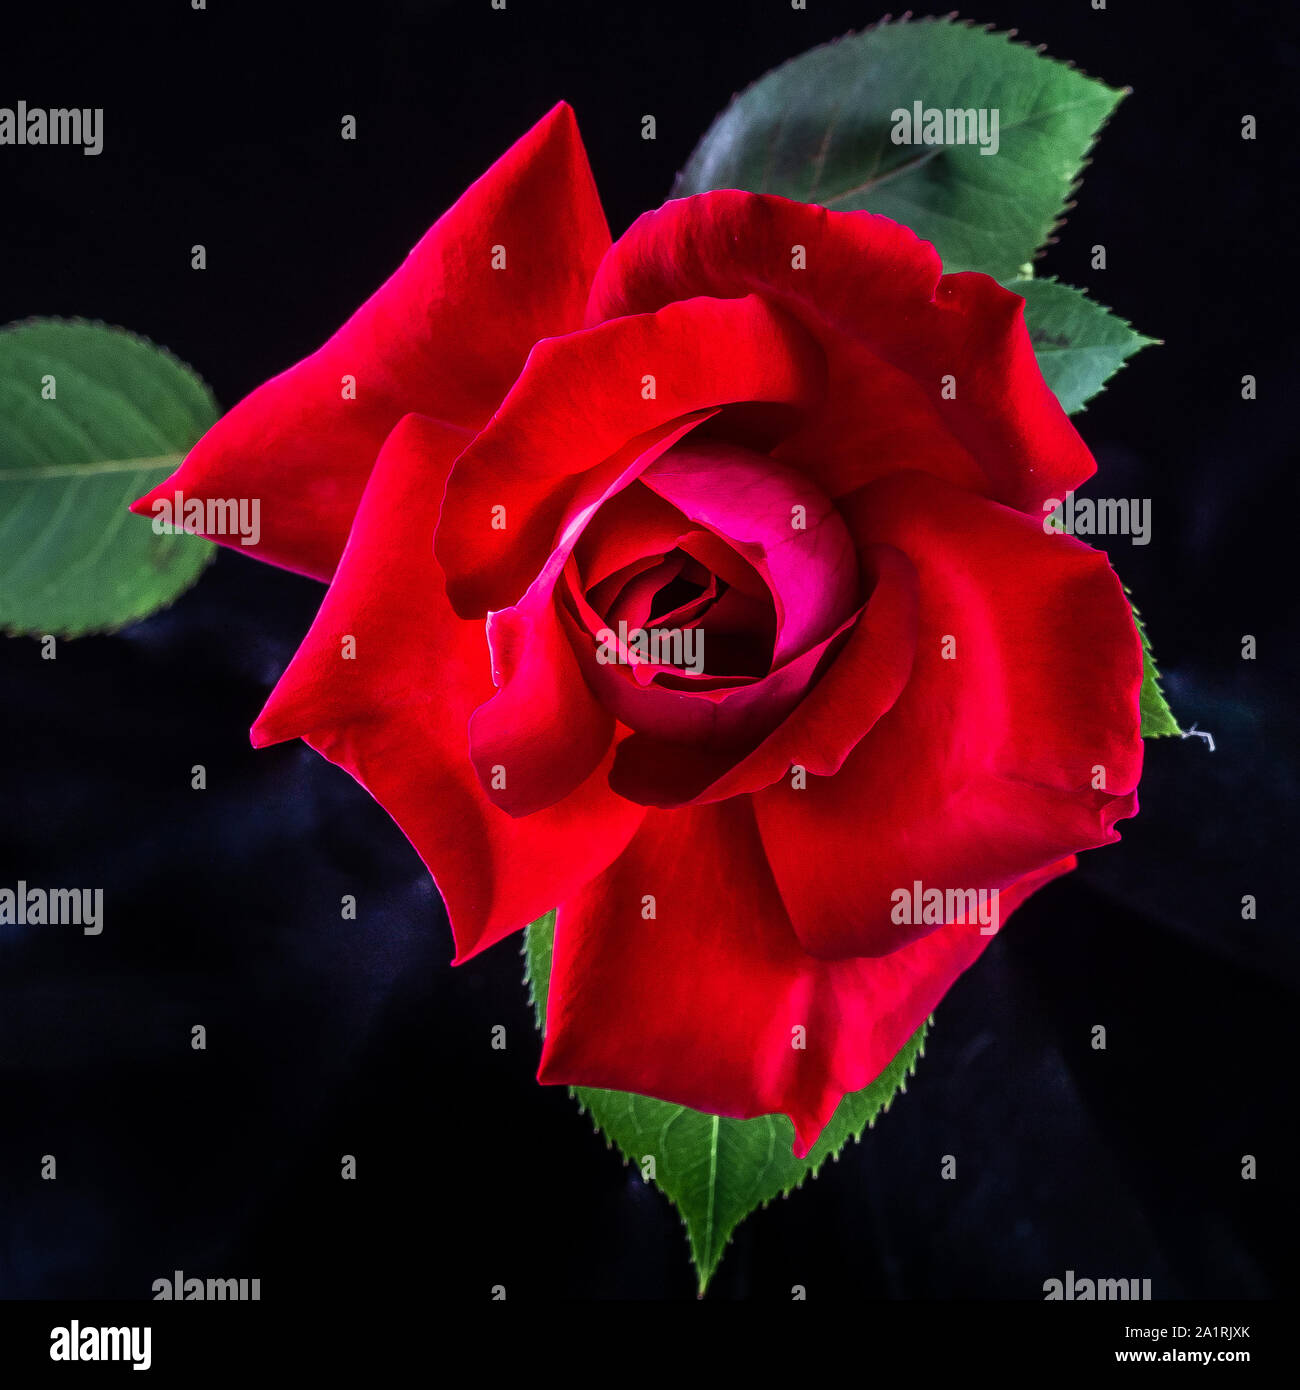 Une rose rouge sur un fond noir, photographié en lumière naturelle. La photographie fait partie d'une étude de la lumière naturelle sur les fleurs. Banque D'Images